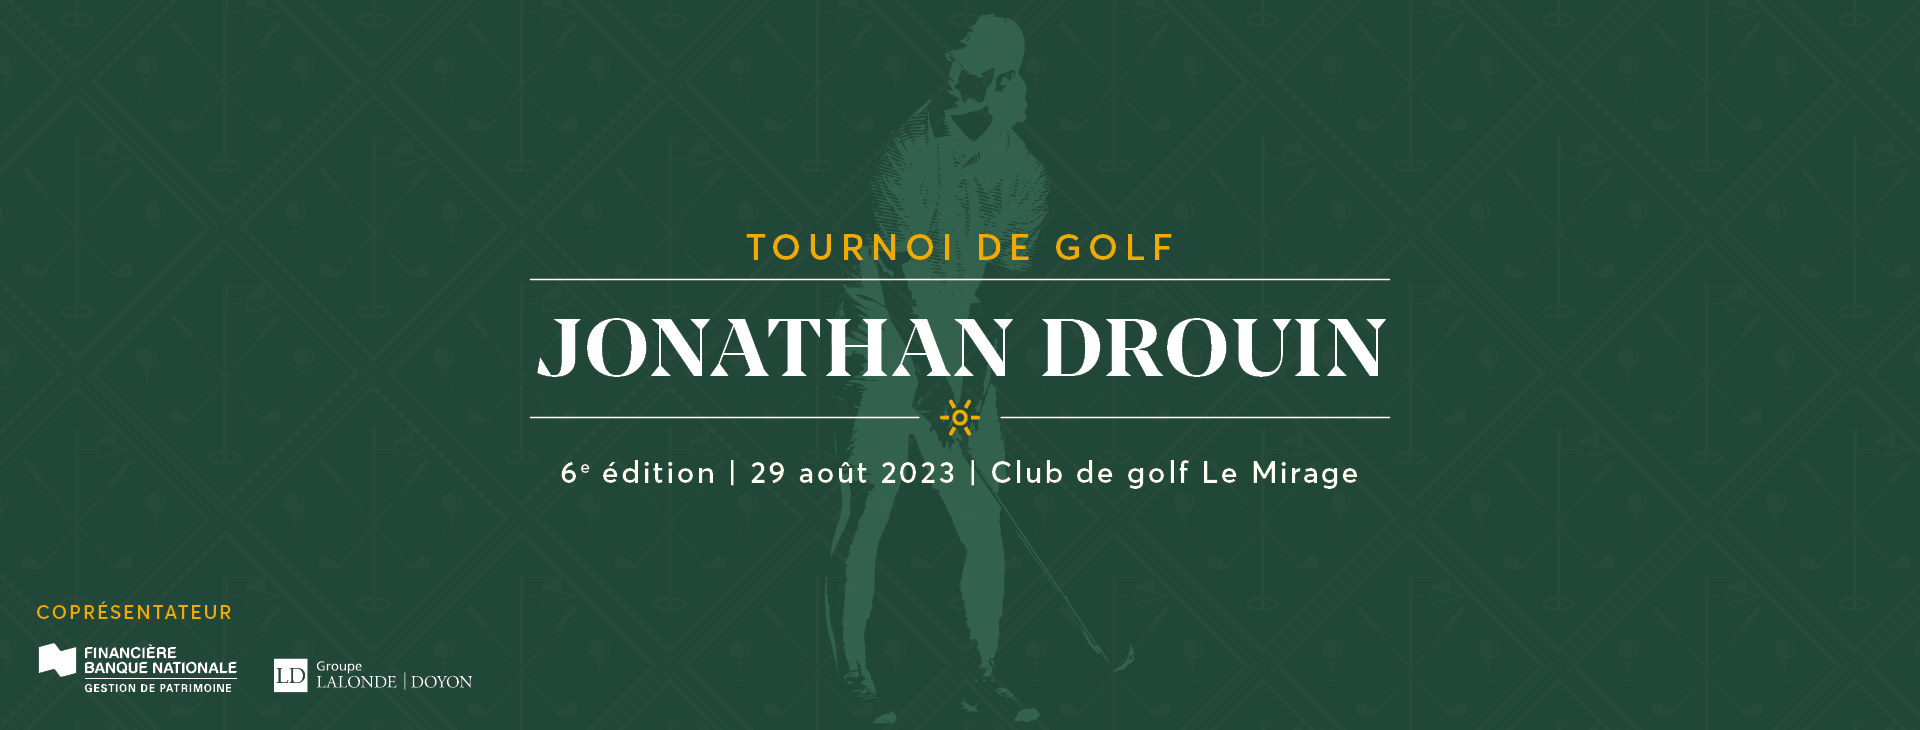 6ème édition du Tournoi de Golf Jonathan Drouin Le 29 août 2023 au Club de Golf Le Mirage